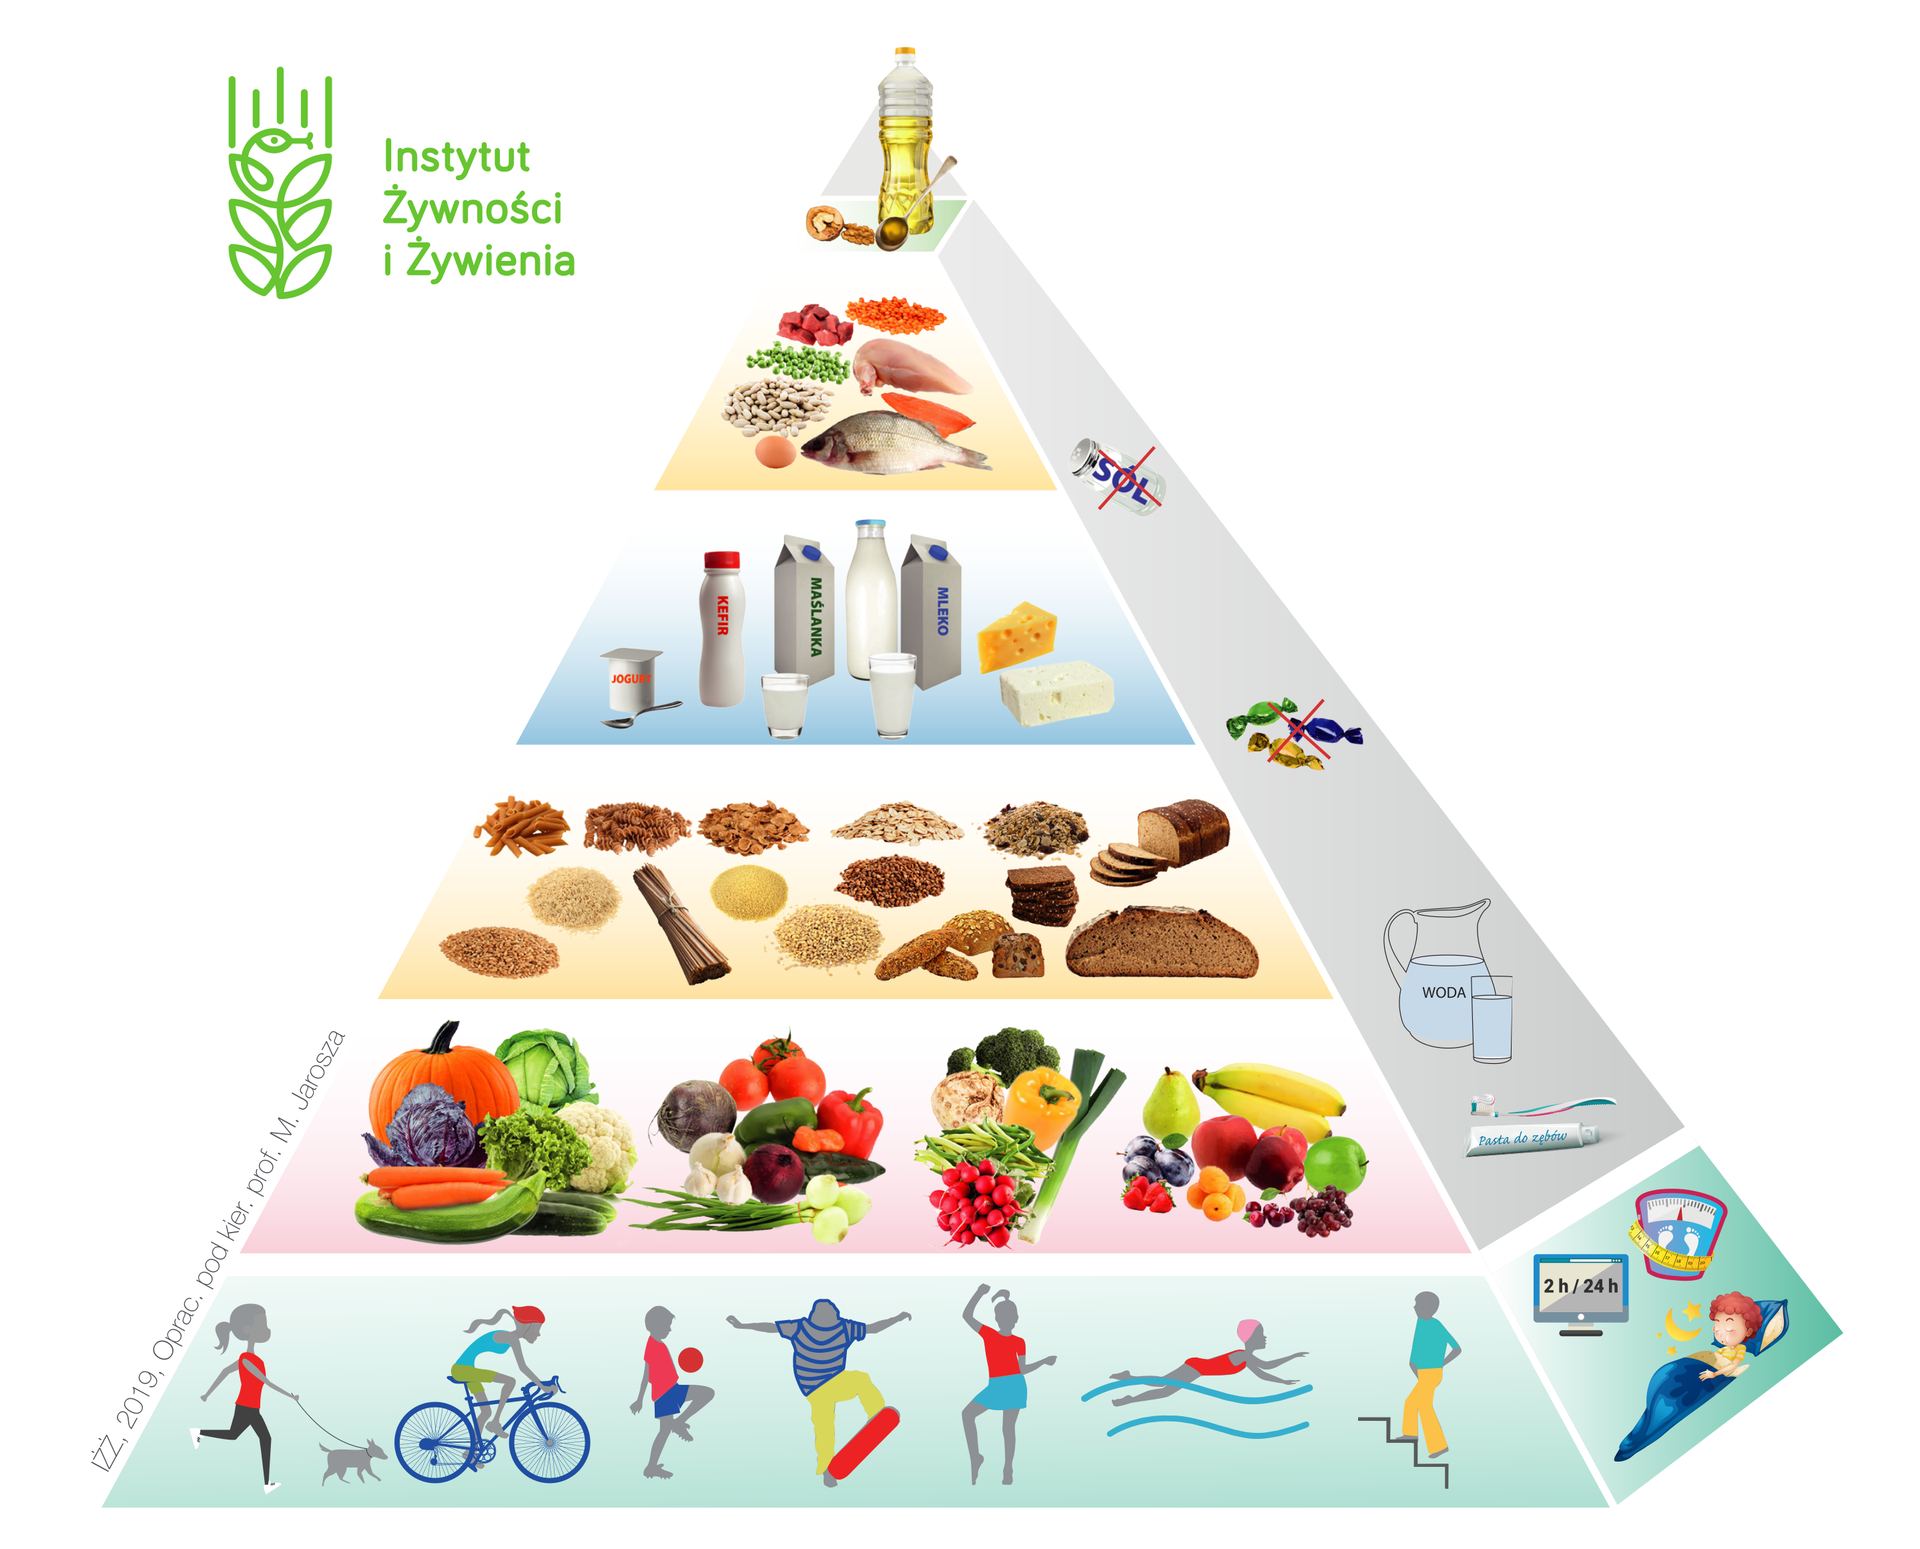 Ilustracja przedstawia piramidę żywieniową. Podstawę piramidy stanowi aktywność fizyczna, zdrowy sen, utrzymywanie prawidłowej masy ciała oraz ograniczanie korzystania z urządzeń elektronicznych. Na wyższym poziomie znajdują się świeże owoce i warzywa, spożywanie odpowiedniej ilości wody oraz higiena osobista. Na następnym poziomie znajdują się pełnoziarniste produkty zbożowe. Na kolejnym nabiał. Powyżej: nasiona, mięso i jajka. Na samym szczycie piramidy znajdują się te produkty, które powinno spożywać się jak najrzadziej: tłuszcze zwierzęce, produkty pszenne, czerwone mięso, słodycze, sól.